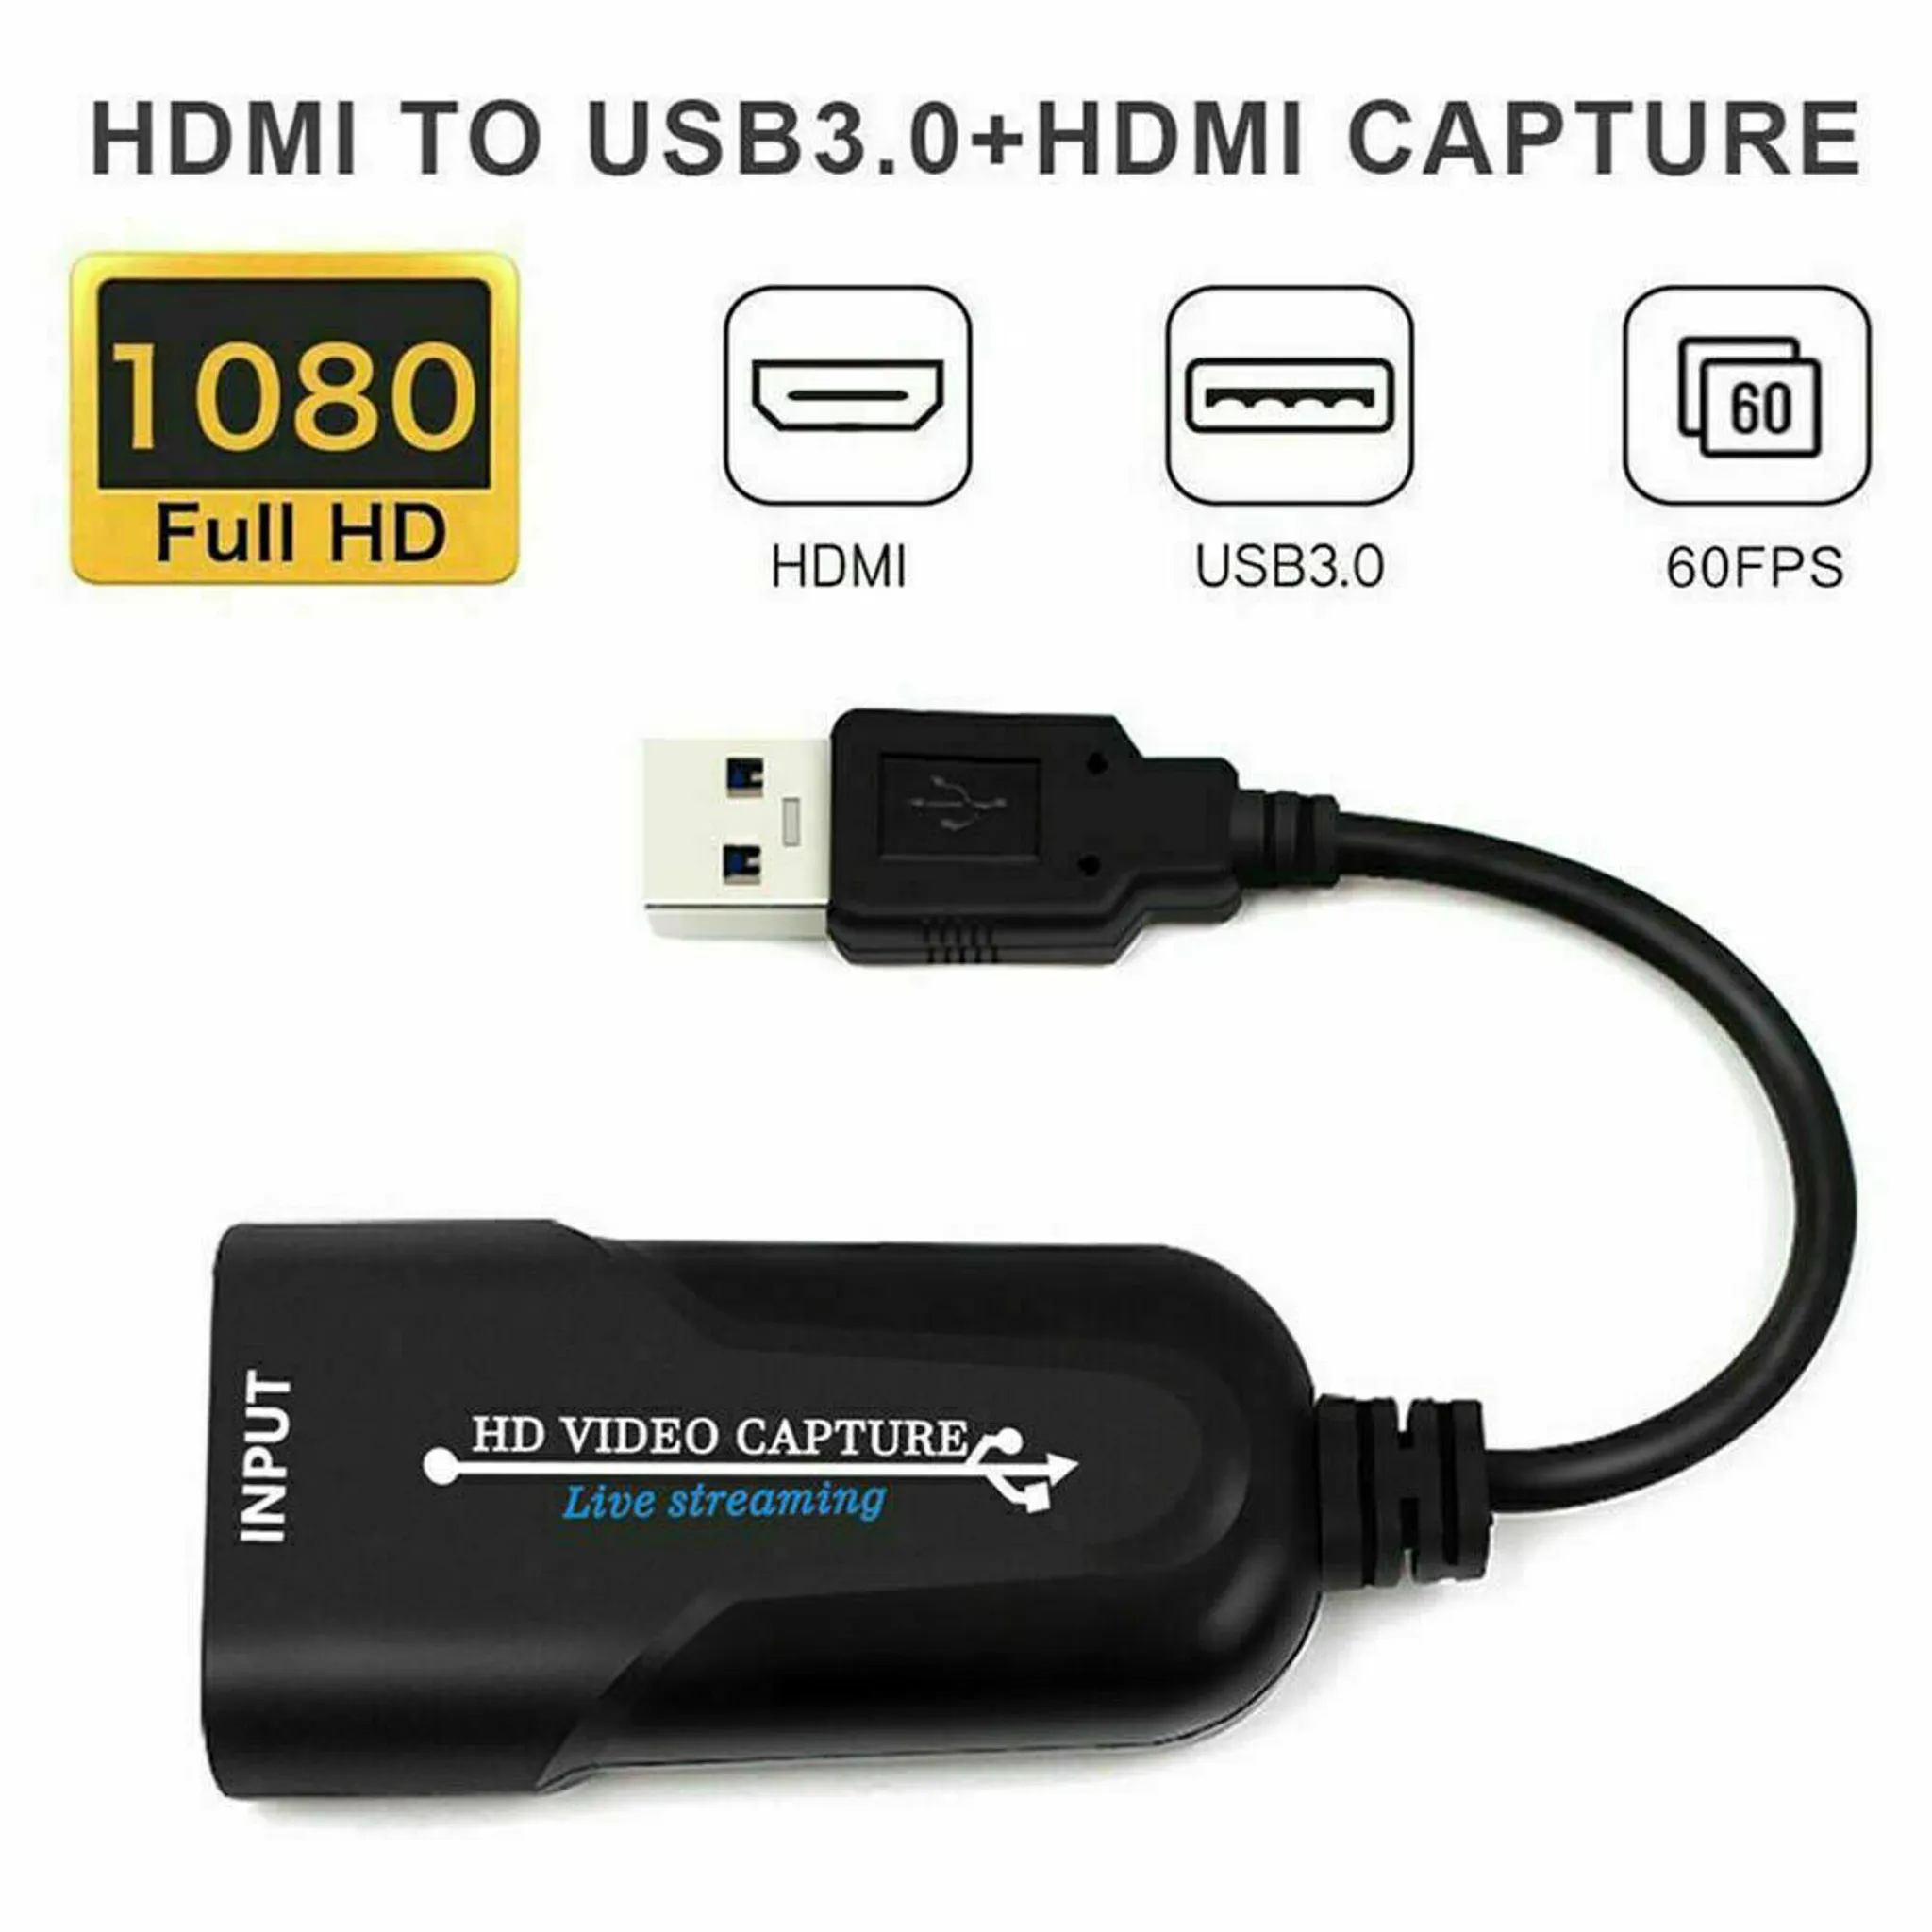 SDI-Videoaufnahmekarte SDI Video Capture Card USB3.0 HD 1080P 60FPS Video Recorder USB3.0/SDI zu SDI Game Capture für Live-Übertragungen und Videoaufnahmen 